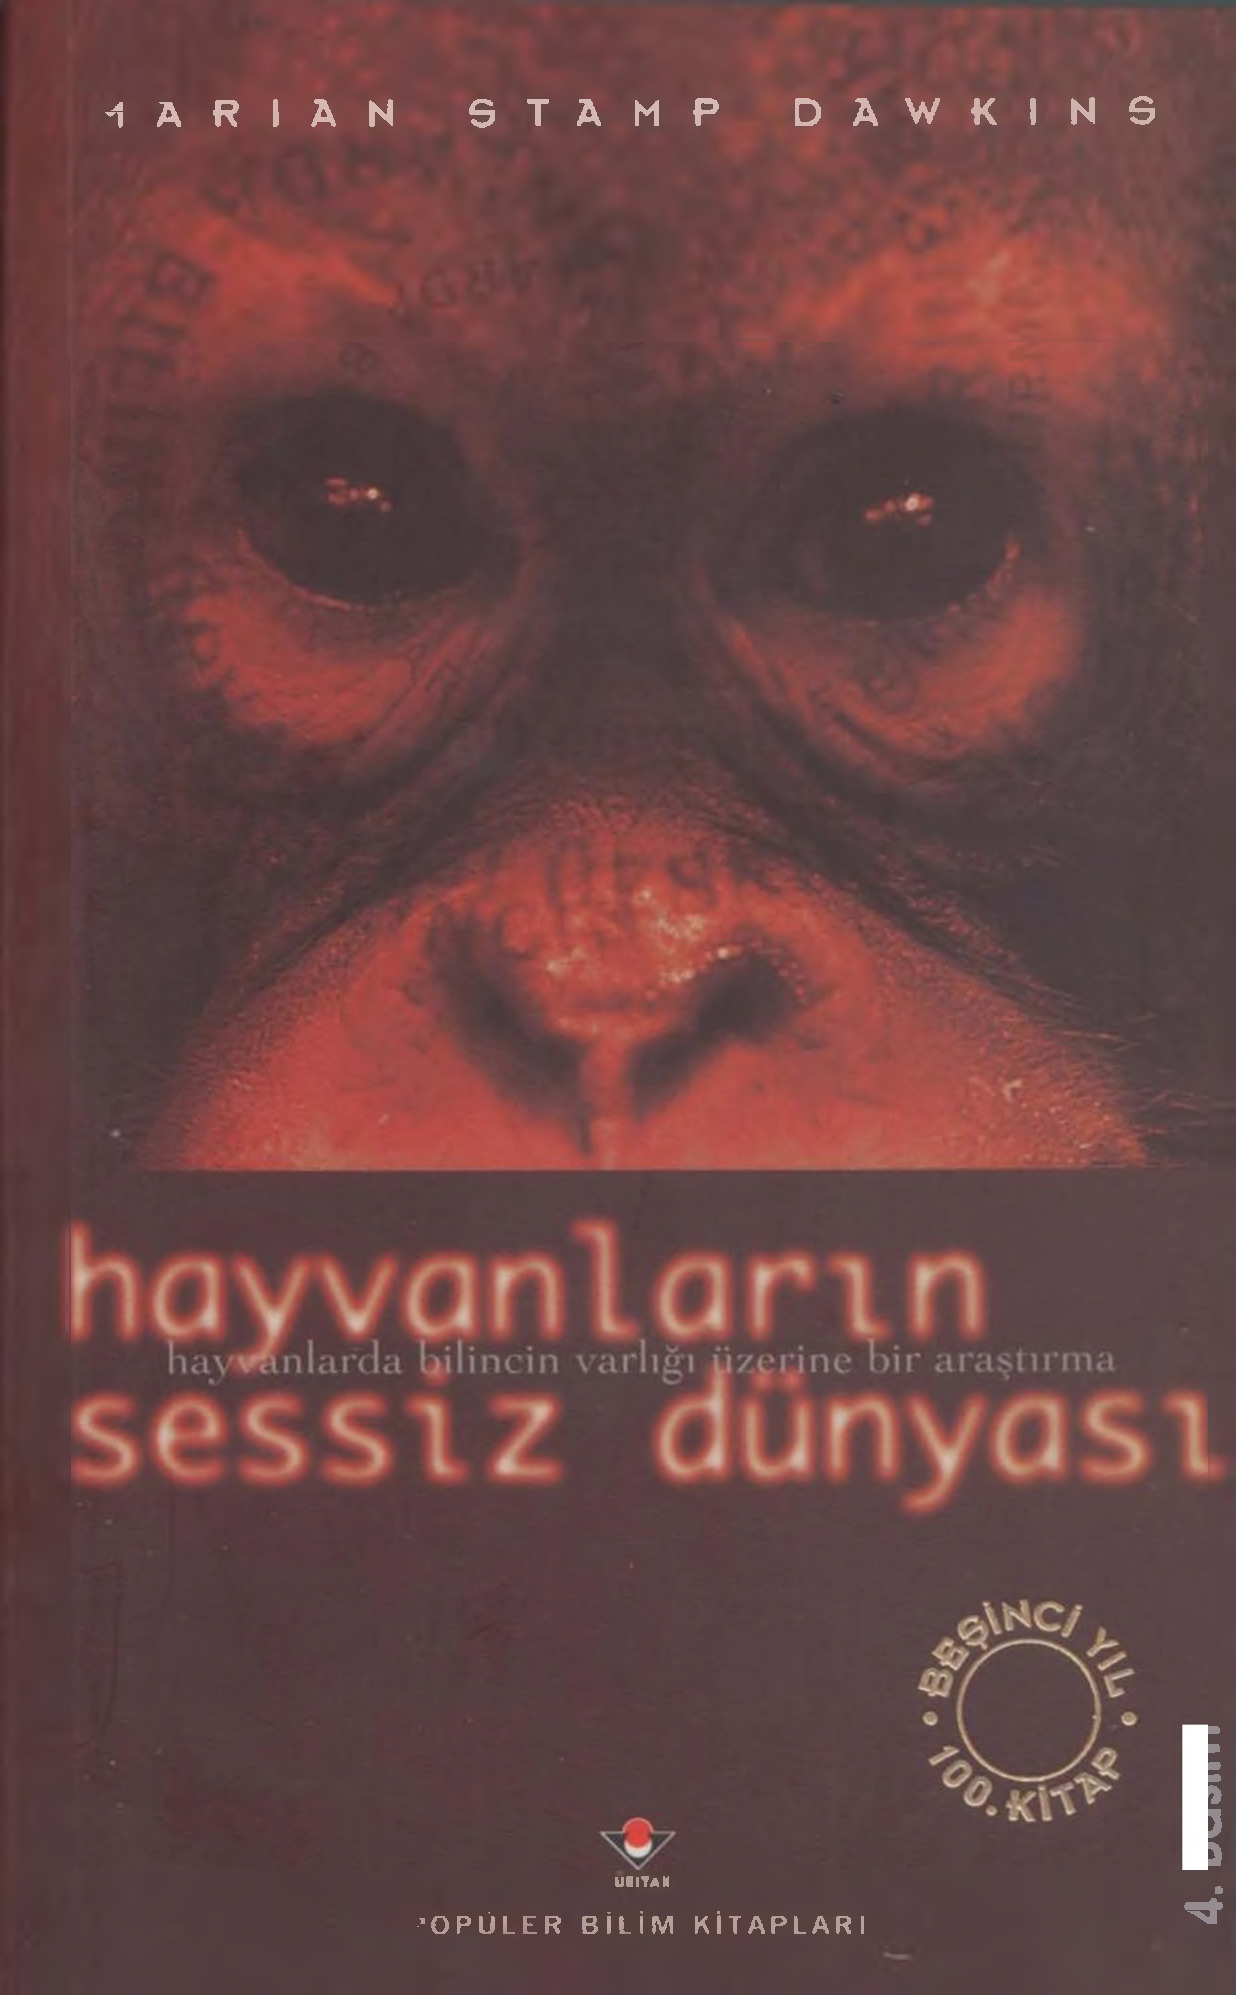 Heyvanlarin Sessiz Dünyasi-Marian Stamp Dawkins-Füsun Baytoq-1999-302s